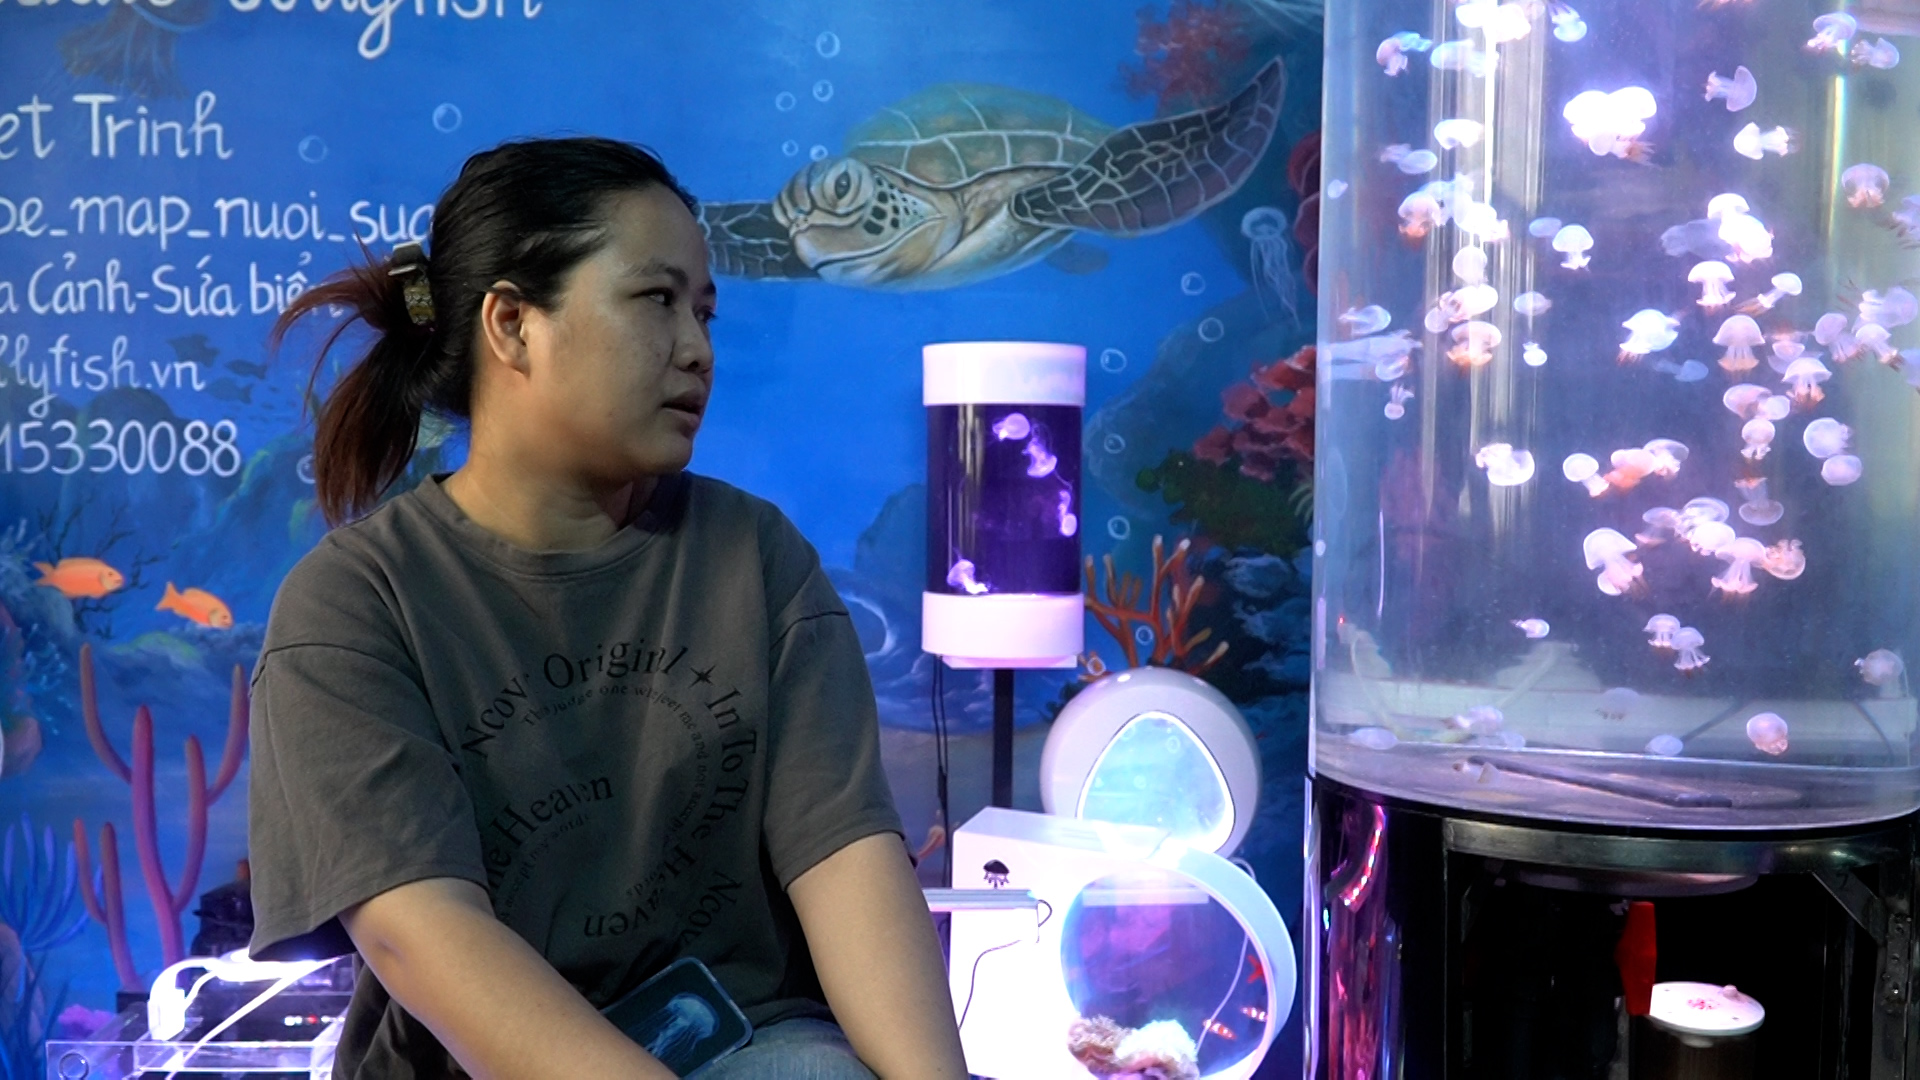 Theo chị Trinh, việc nuôi sứa cảnh không hề dễ dàng khi phải đáp ứng nhiều tiêu chí như nhiệt độ, môi trường nước. Ảnh: NVCC 